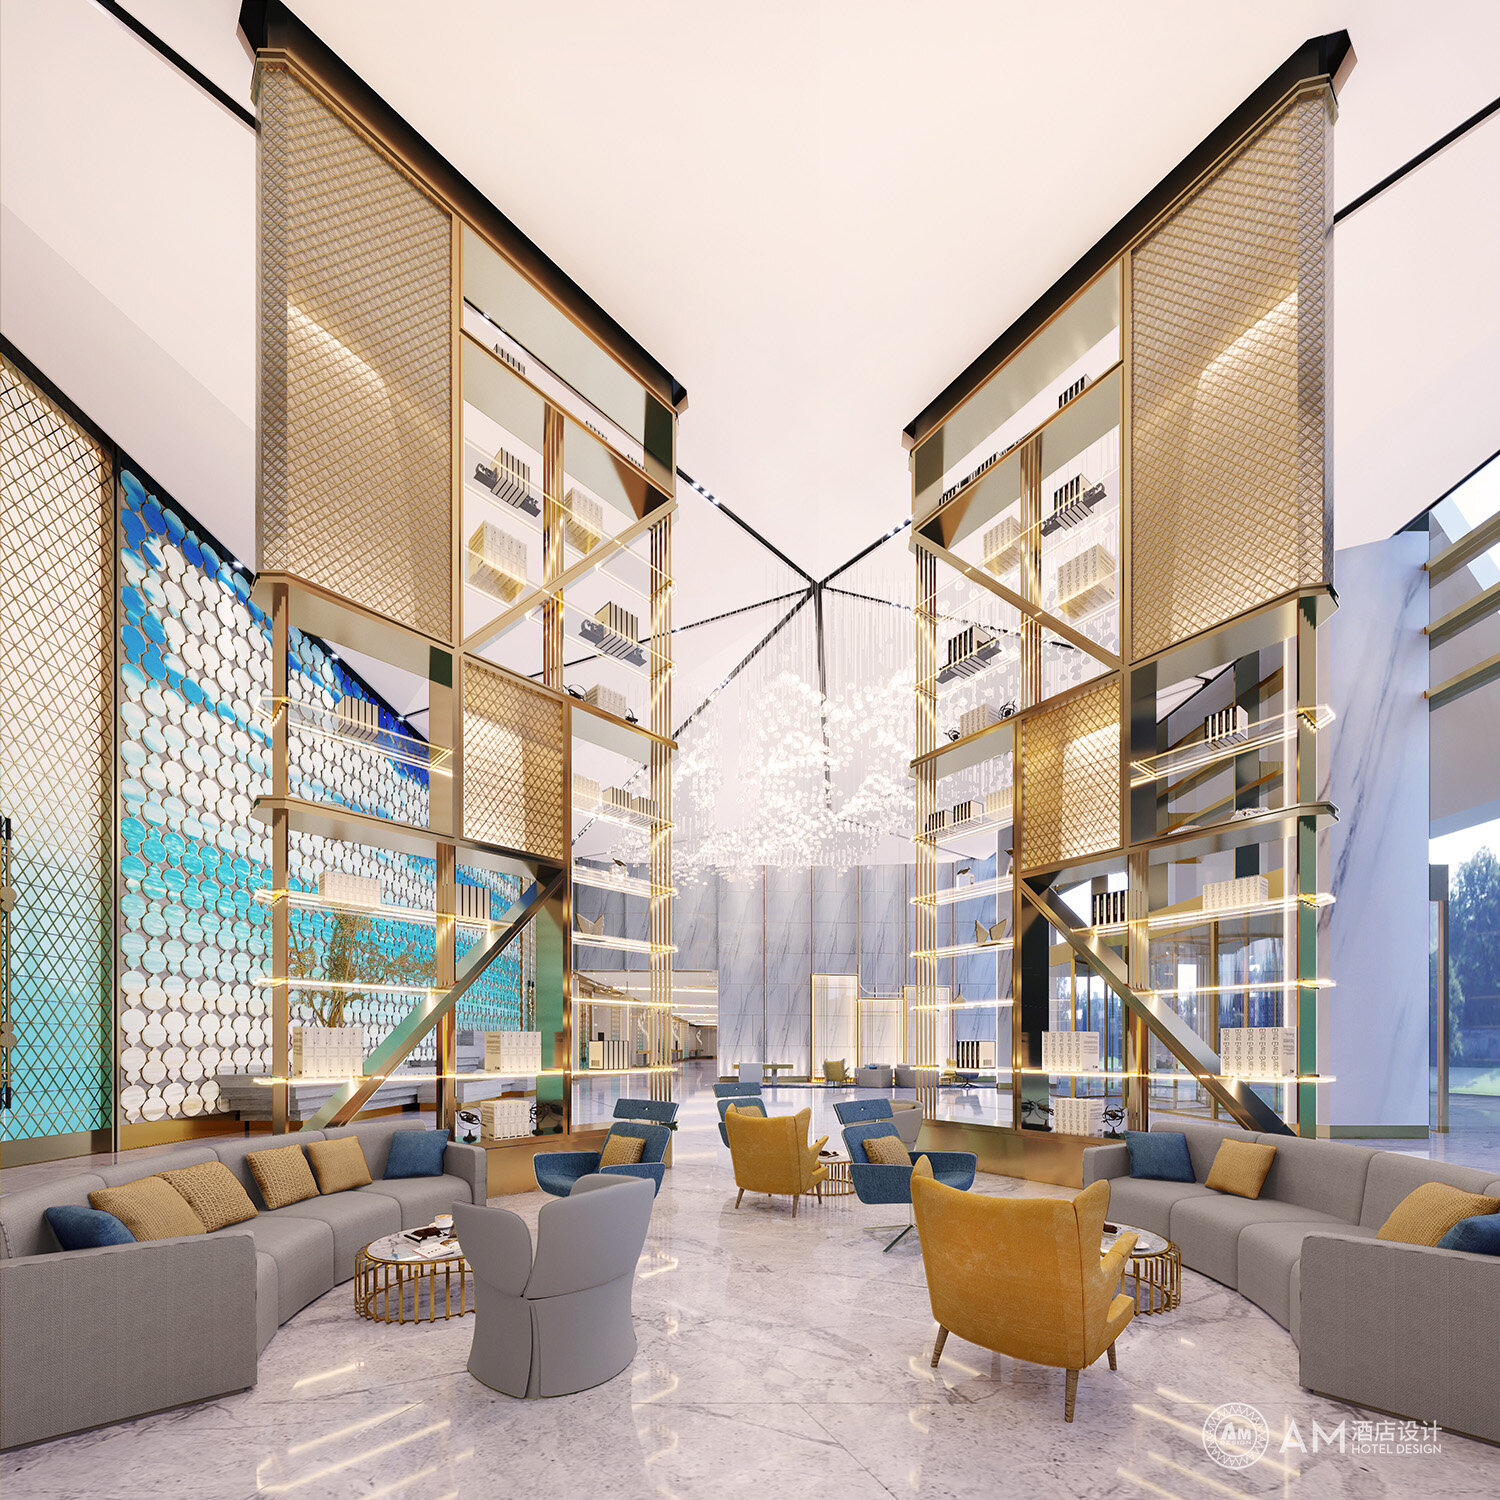 AM DESIGN | Hall design of conference center of mega Hotel